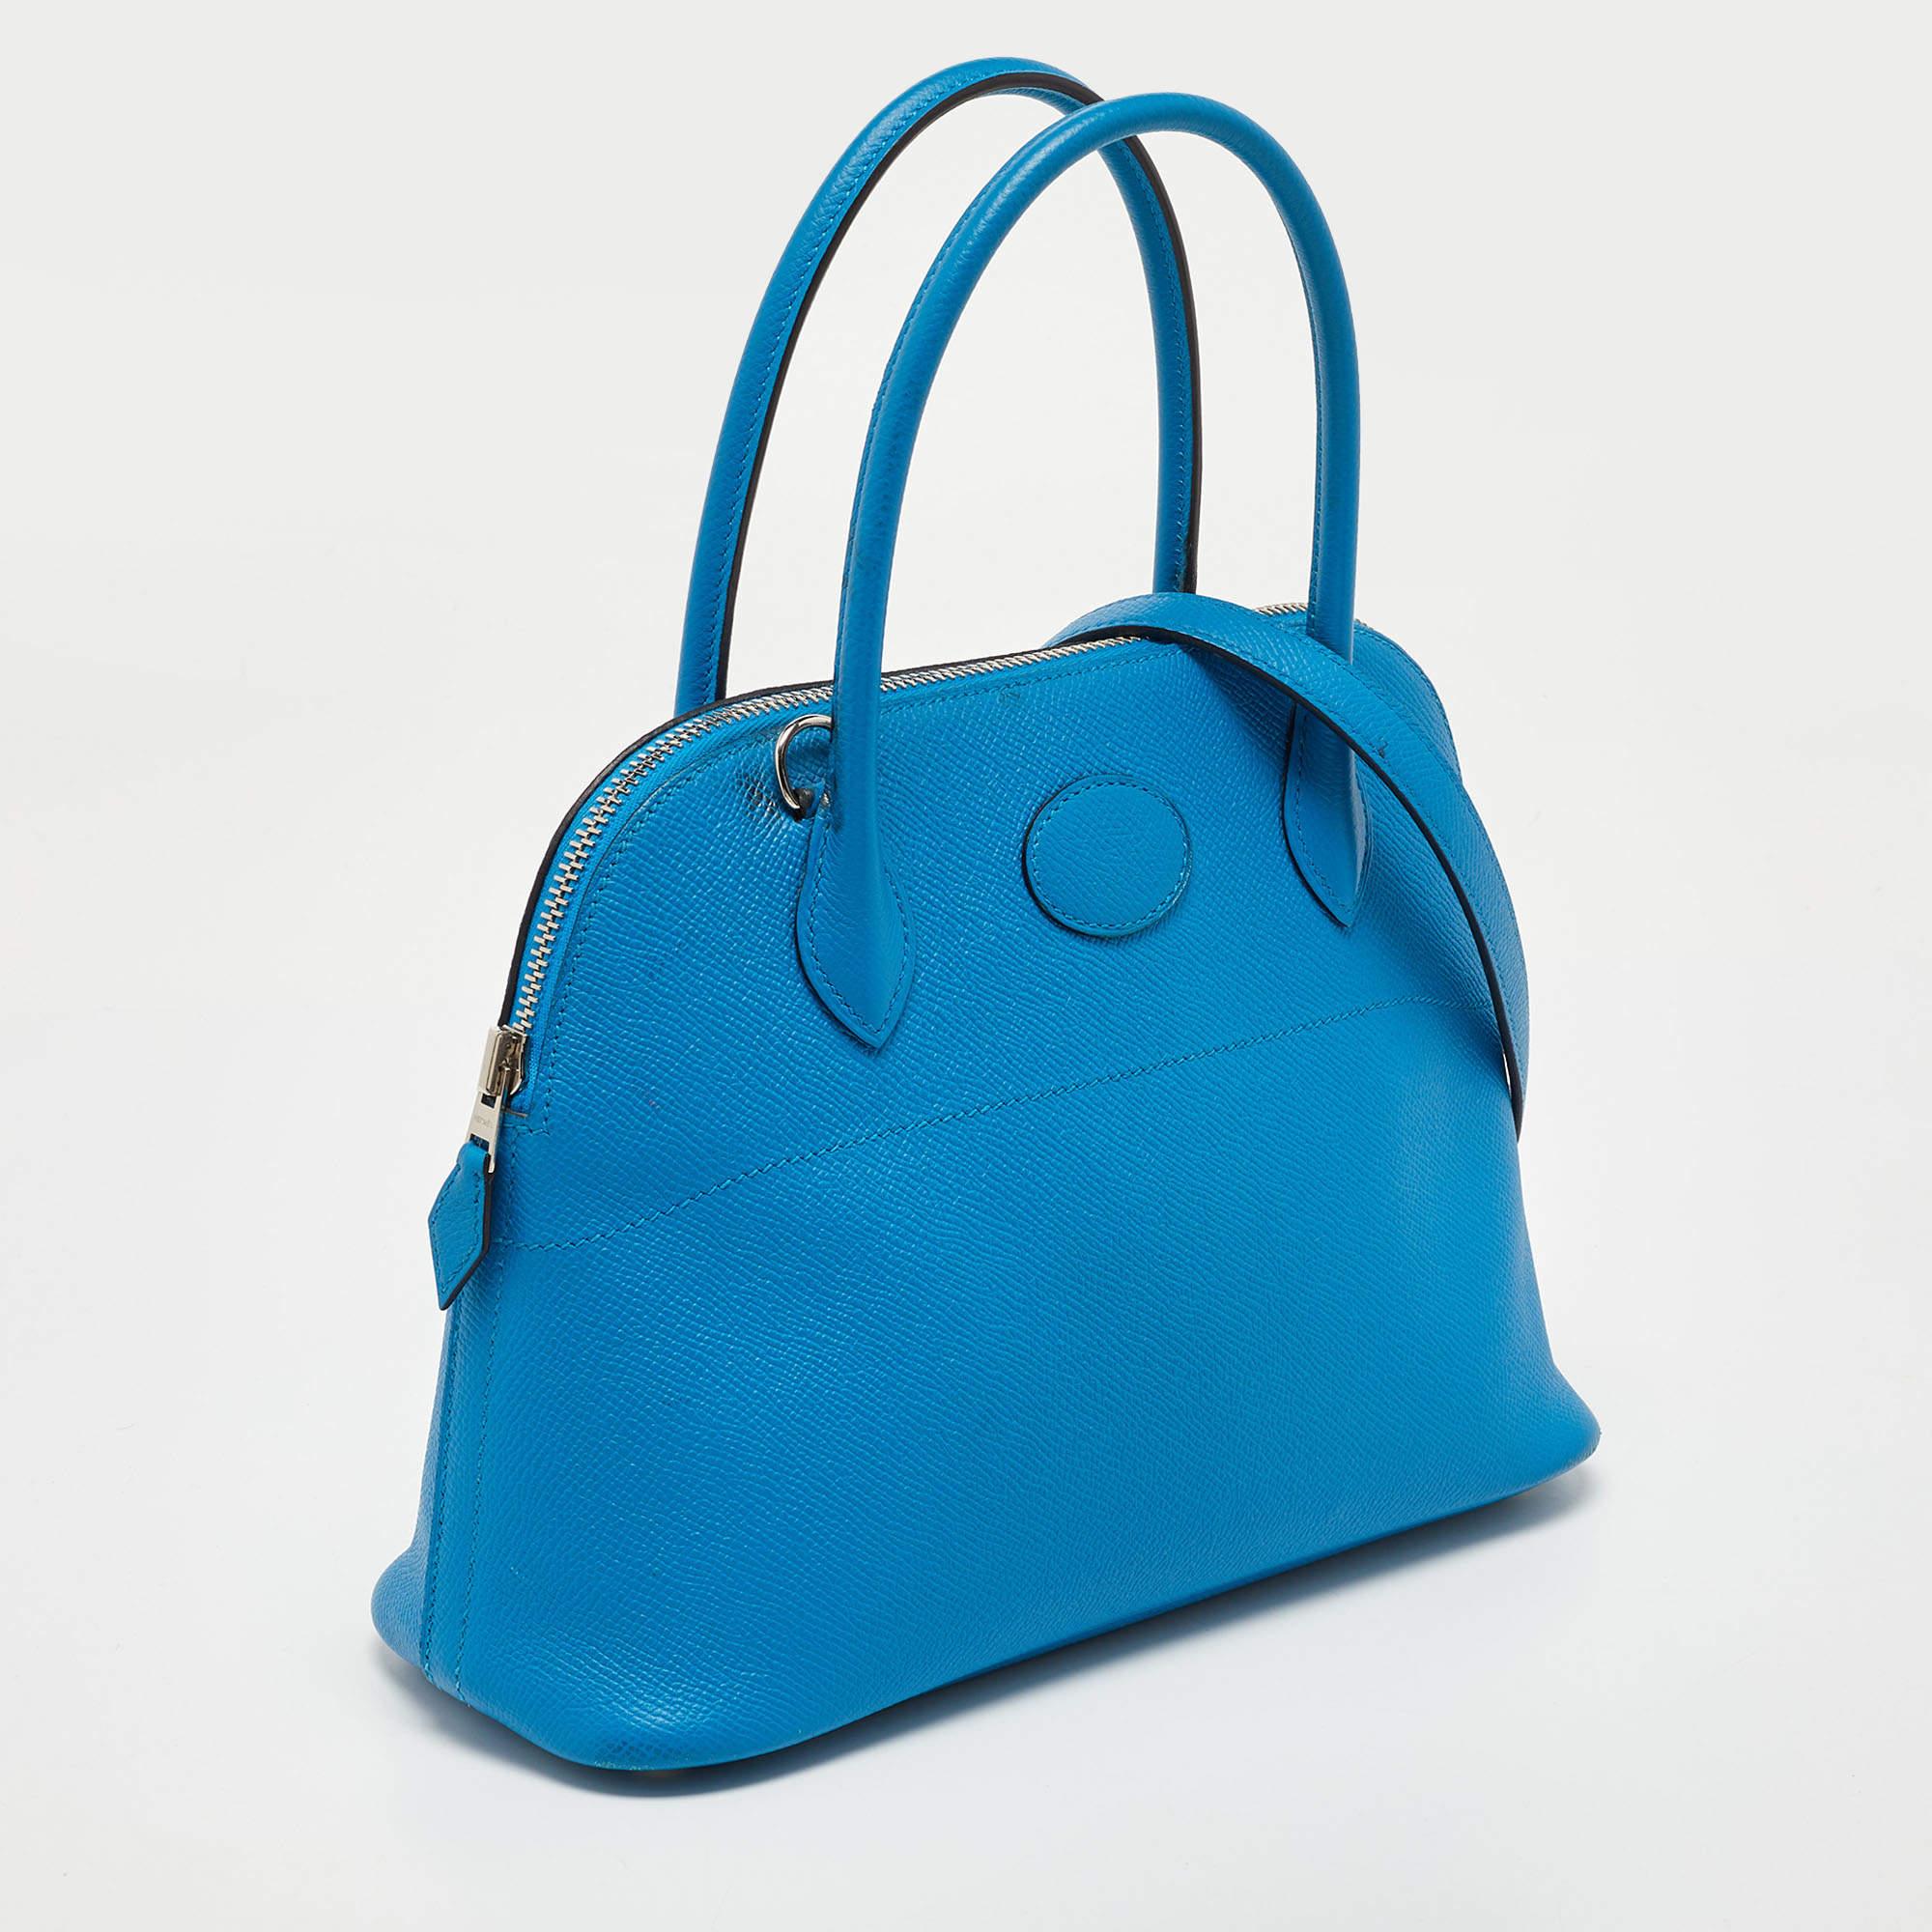 Diese luxuriöse, von den Experten von Hermes gefertigte Tasche Bolide 27 ist ein unverzichtbares Accessoire für Modefans. Eine Apt-Tasche für den Alltag, die eine perfekte Kombination aus Raffinesse und Funktionalität darstellt. Die aus Epsom-Leder